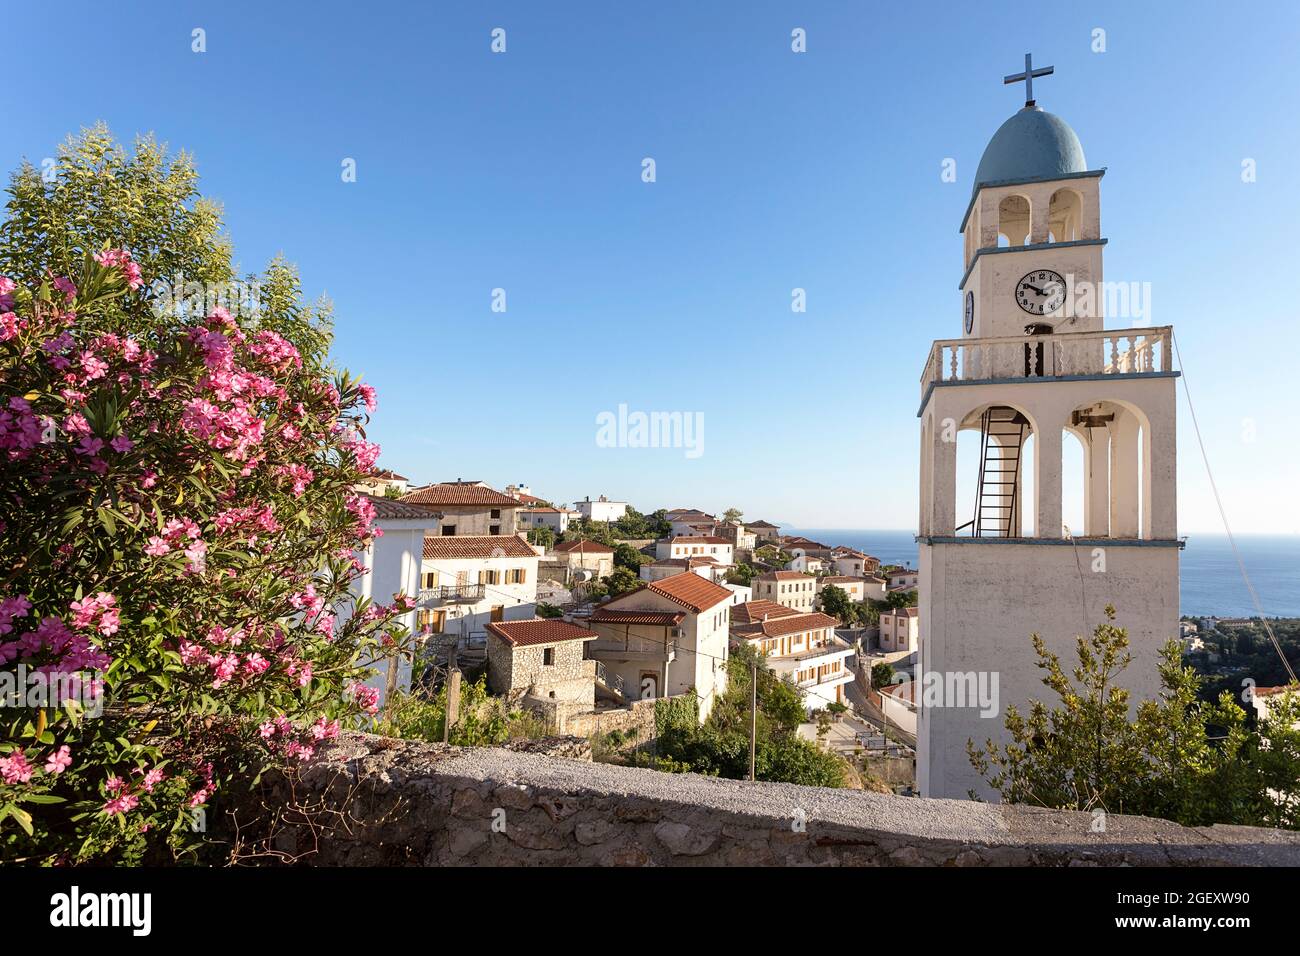 Chiesa torre sopra villaggio di Dhermi (Dhermiu), massiccio Cikes, Riviera albanese, Albania Foto Stock